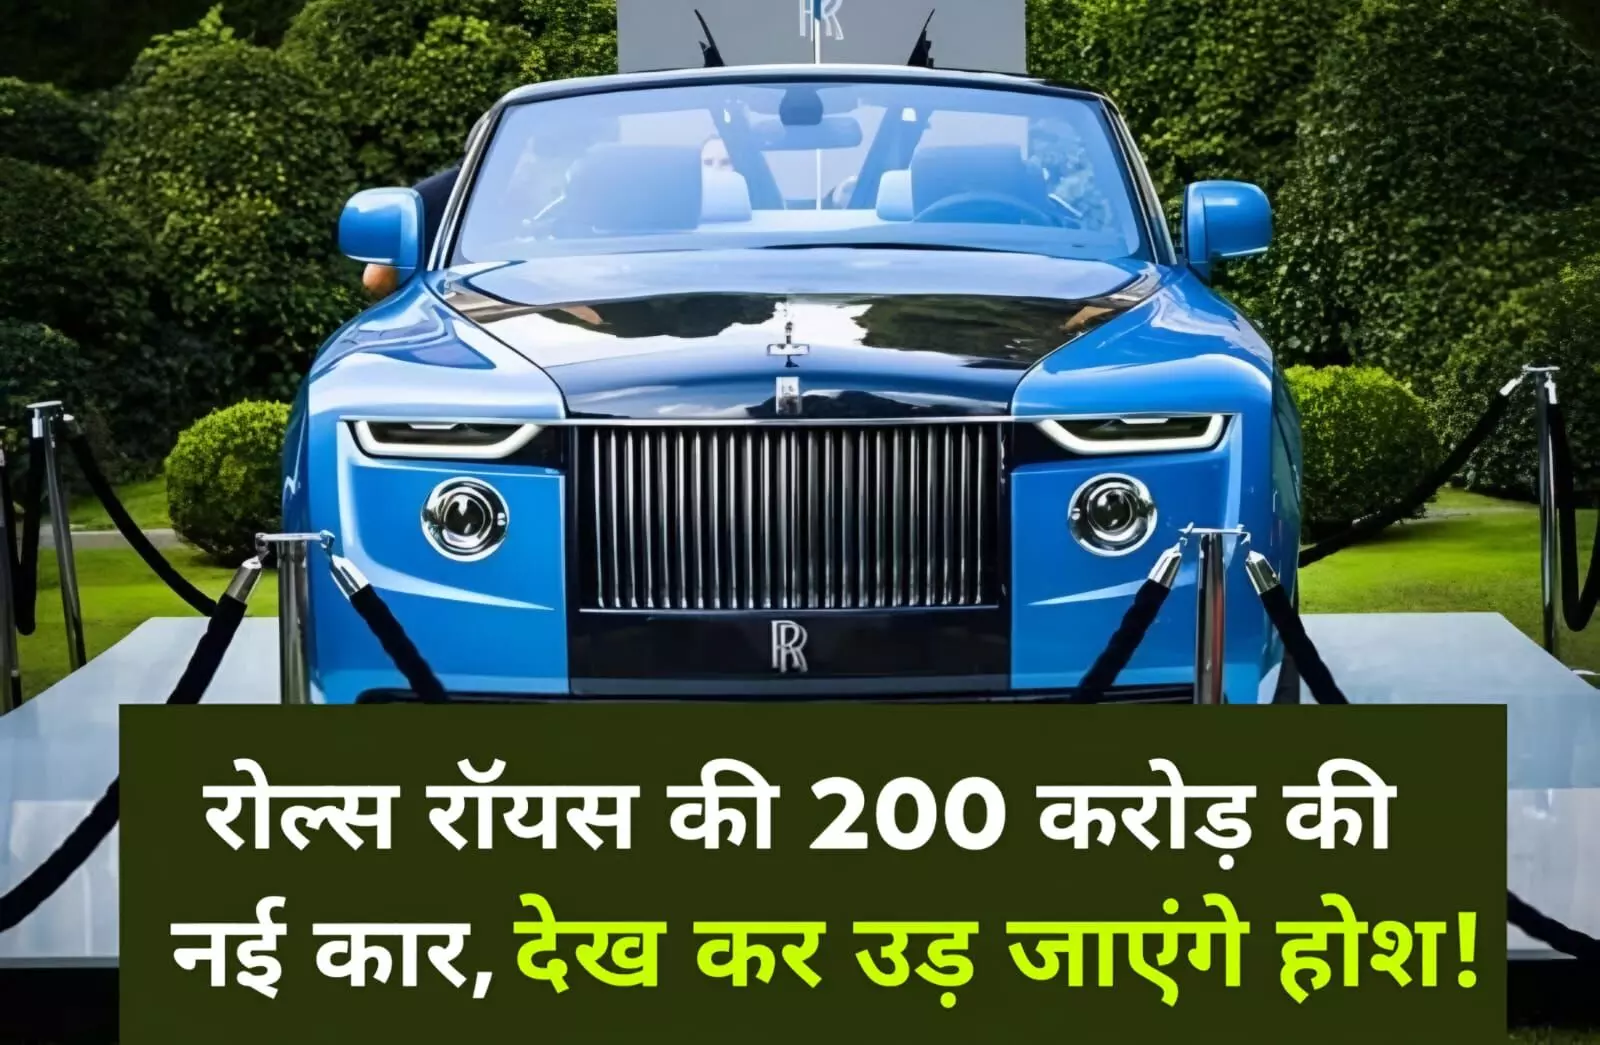 रोल्स-रॉयस ने पेश की दुनिया की सबसे महंगी कार, कीमत 200 करोड़ रुपए; जानें क्या है खासियत